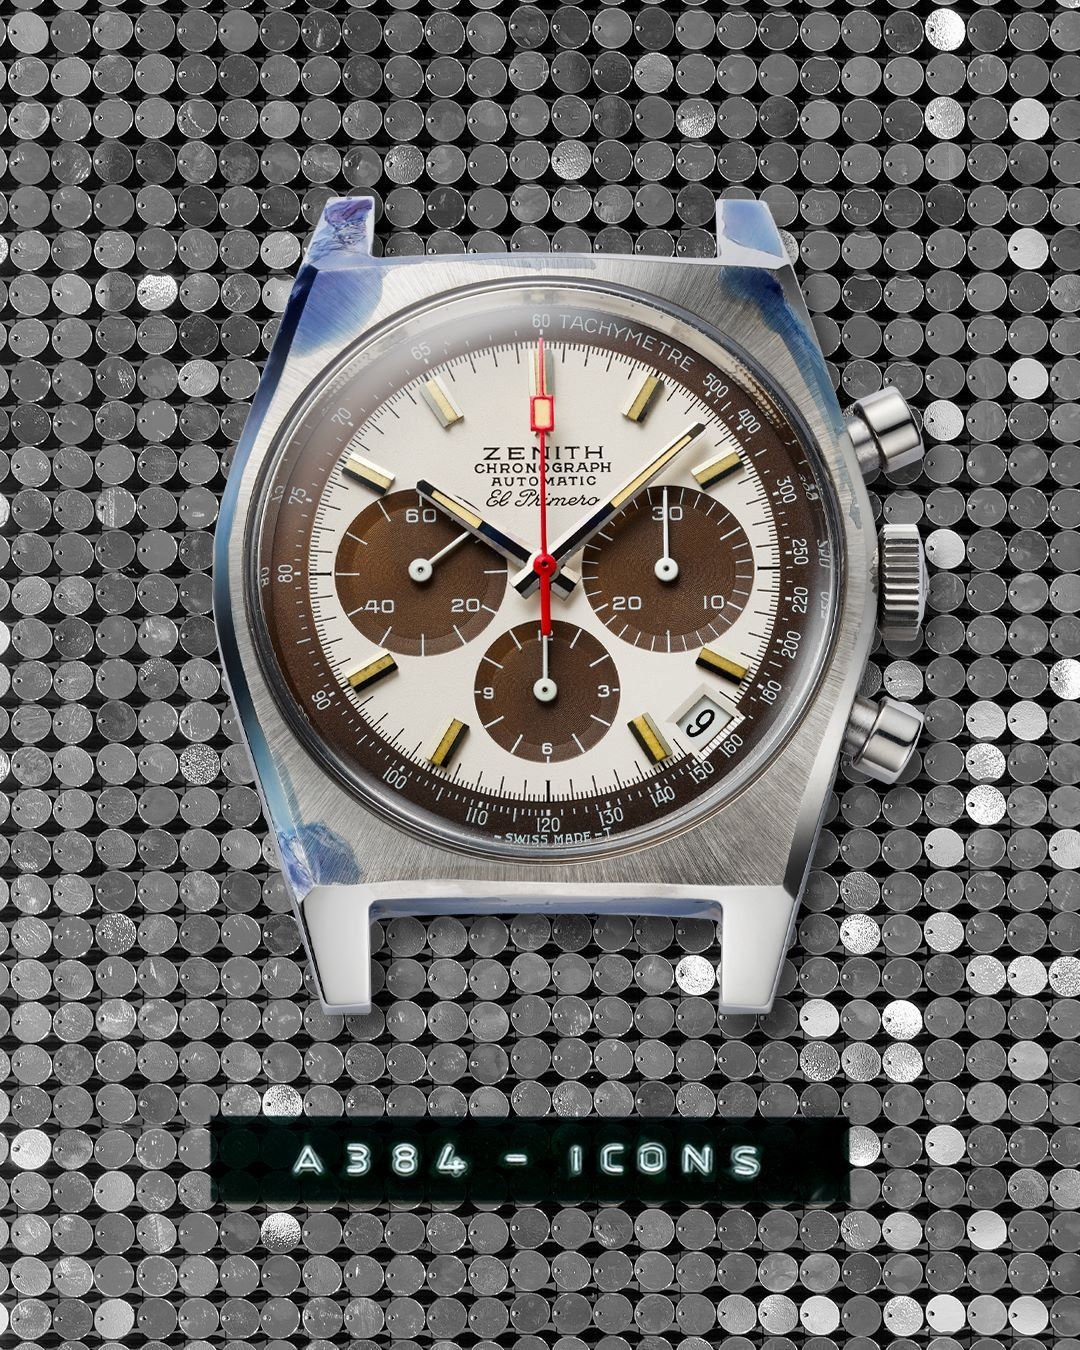 El Primero "A384" chronograph